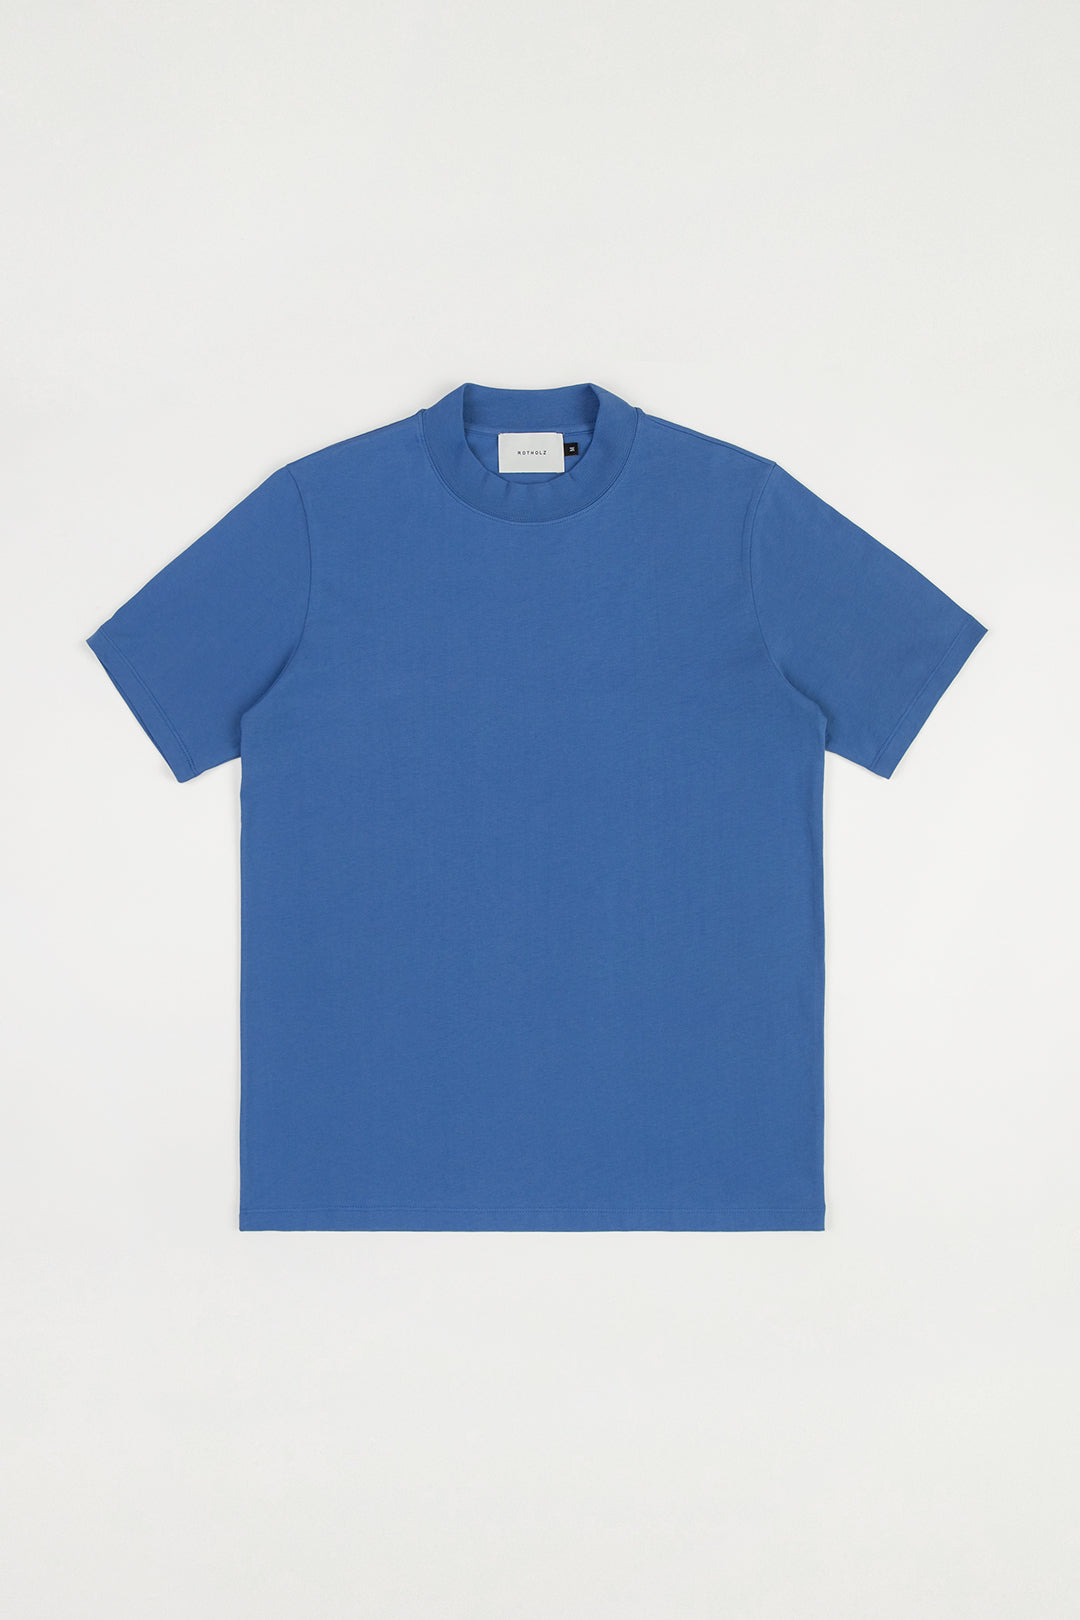 Blaues T-Shirt mit breitem Kragen aus Bio Baumwolle von Rotholz T-Shirt